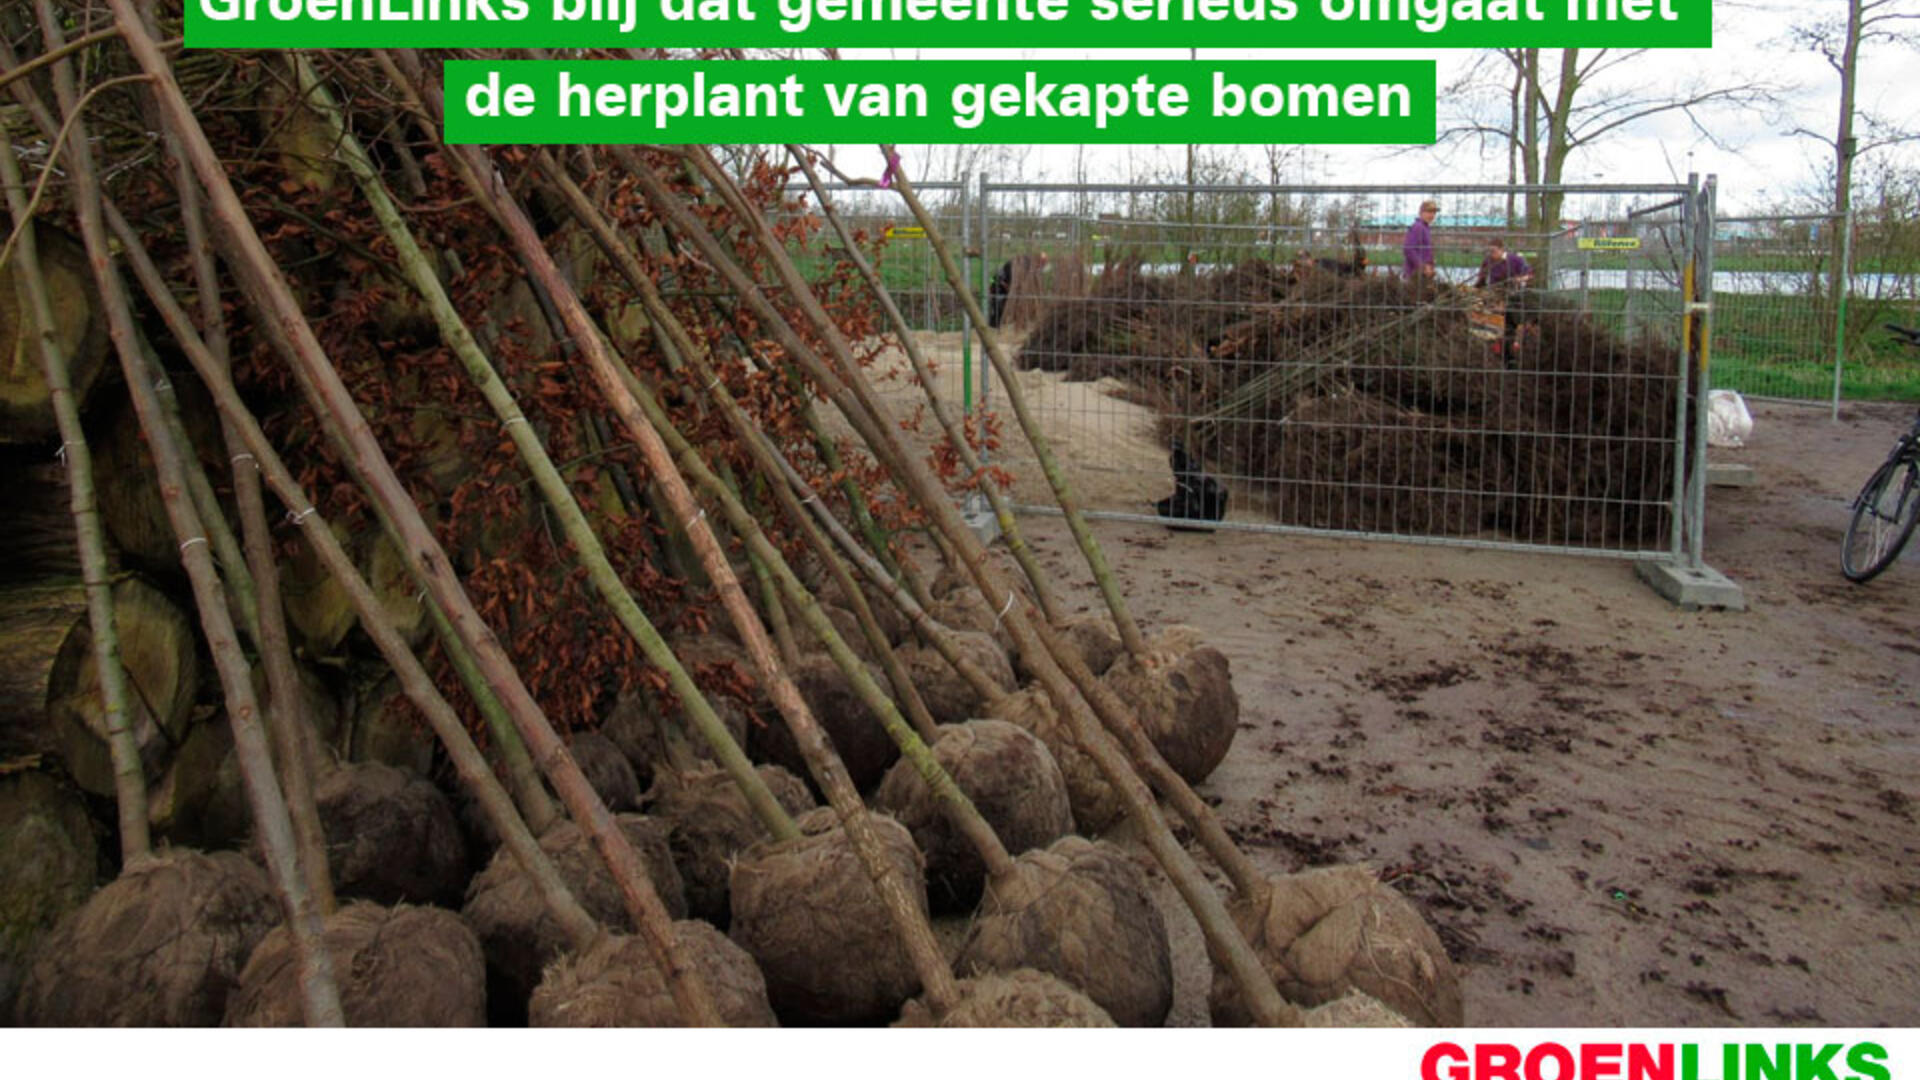 GroenLinks blij dat gemeente serieus omgaat met de herplant van gekapte bomen - 20 maart 2020